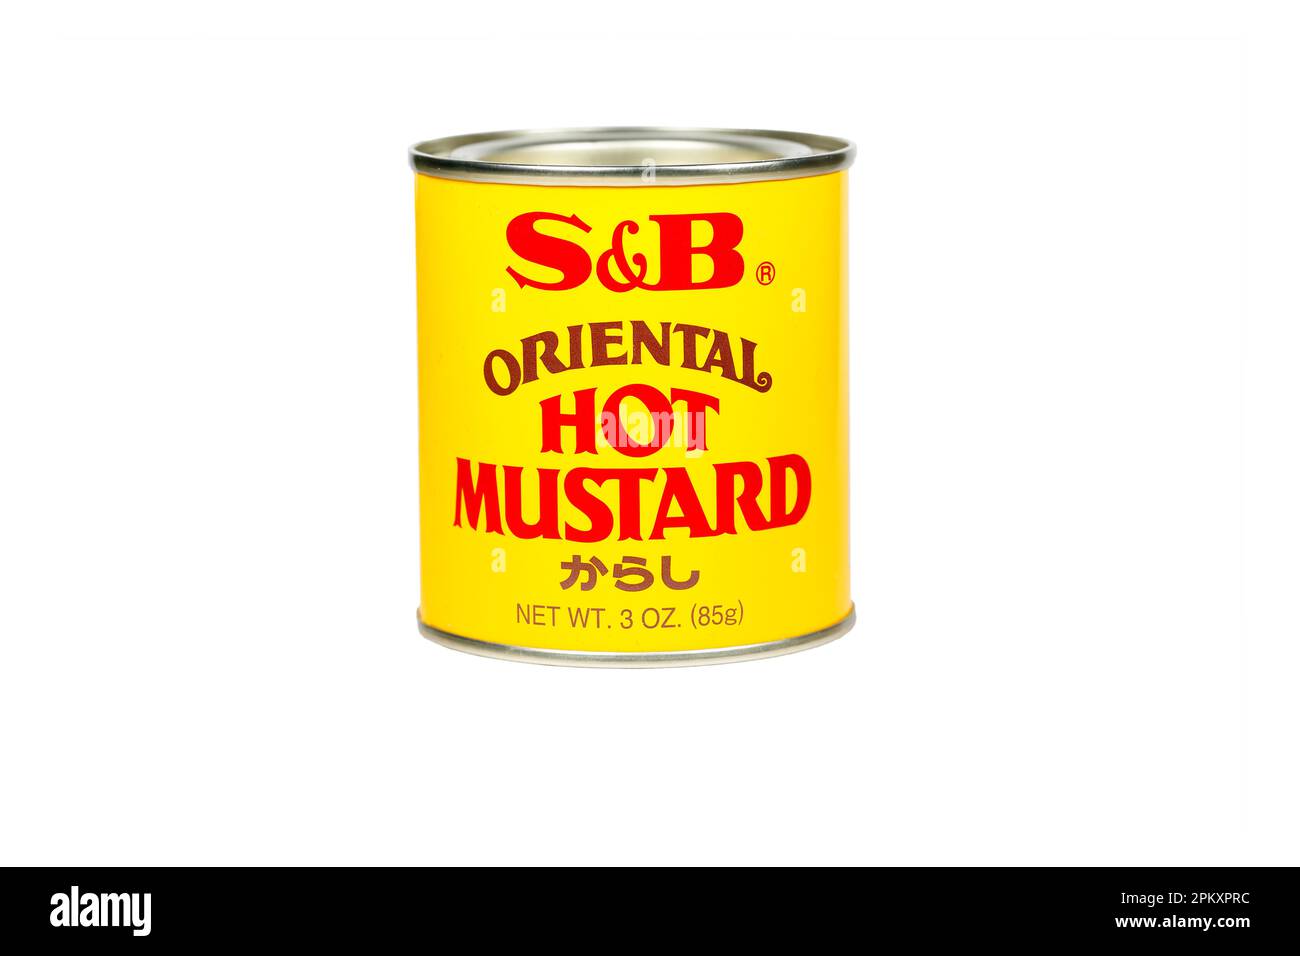 Una lattina di polvere di senape calda S&B marchio Oriental からし isolata su uno sfondo bianco. immagine ritagliata per uso illustrativo ed editoriale. Foto Stock